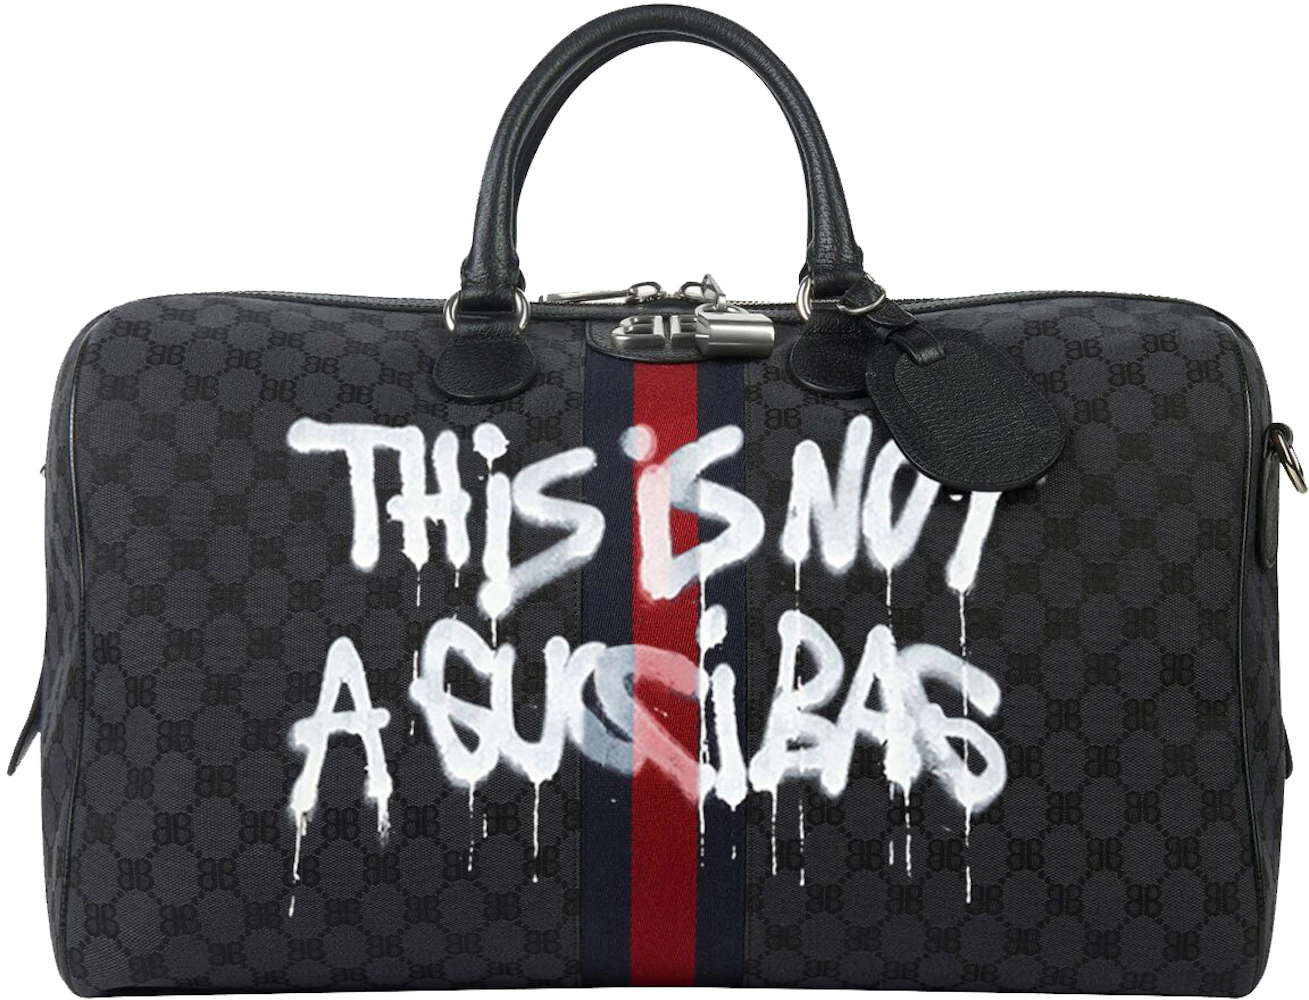 Gucci x Balenciaga The Hacker Project Graffiti Laptop Pouch Black